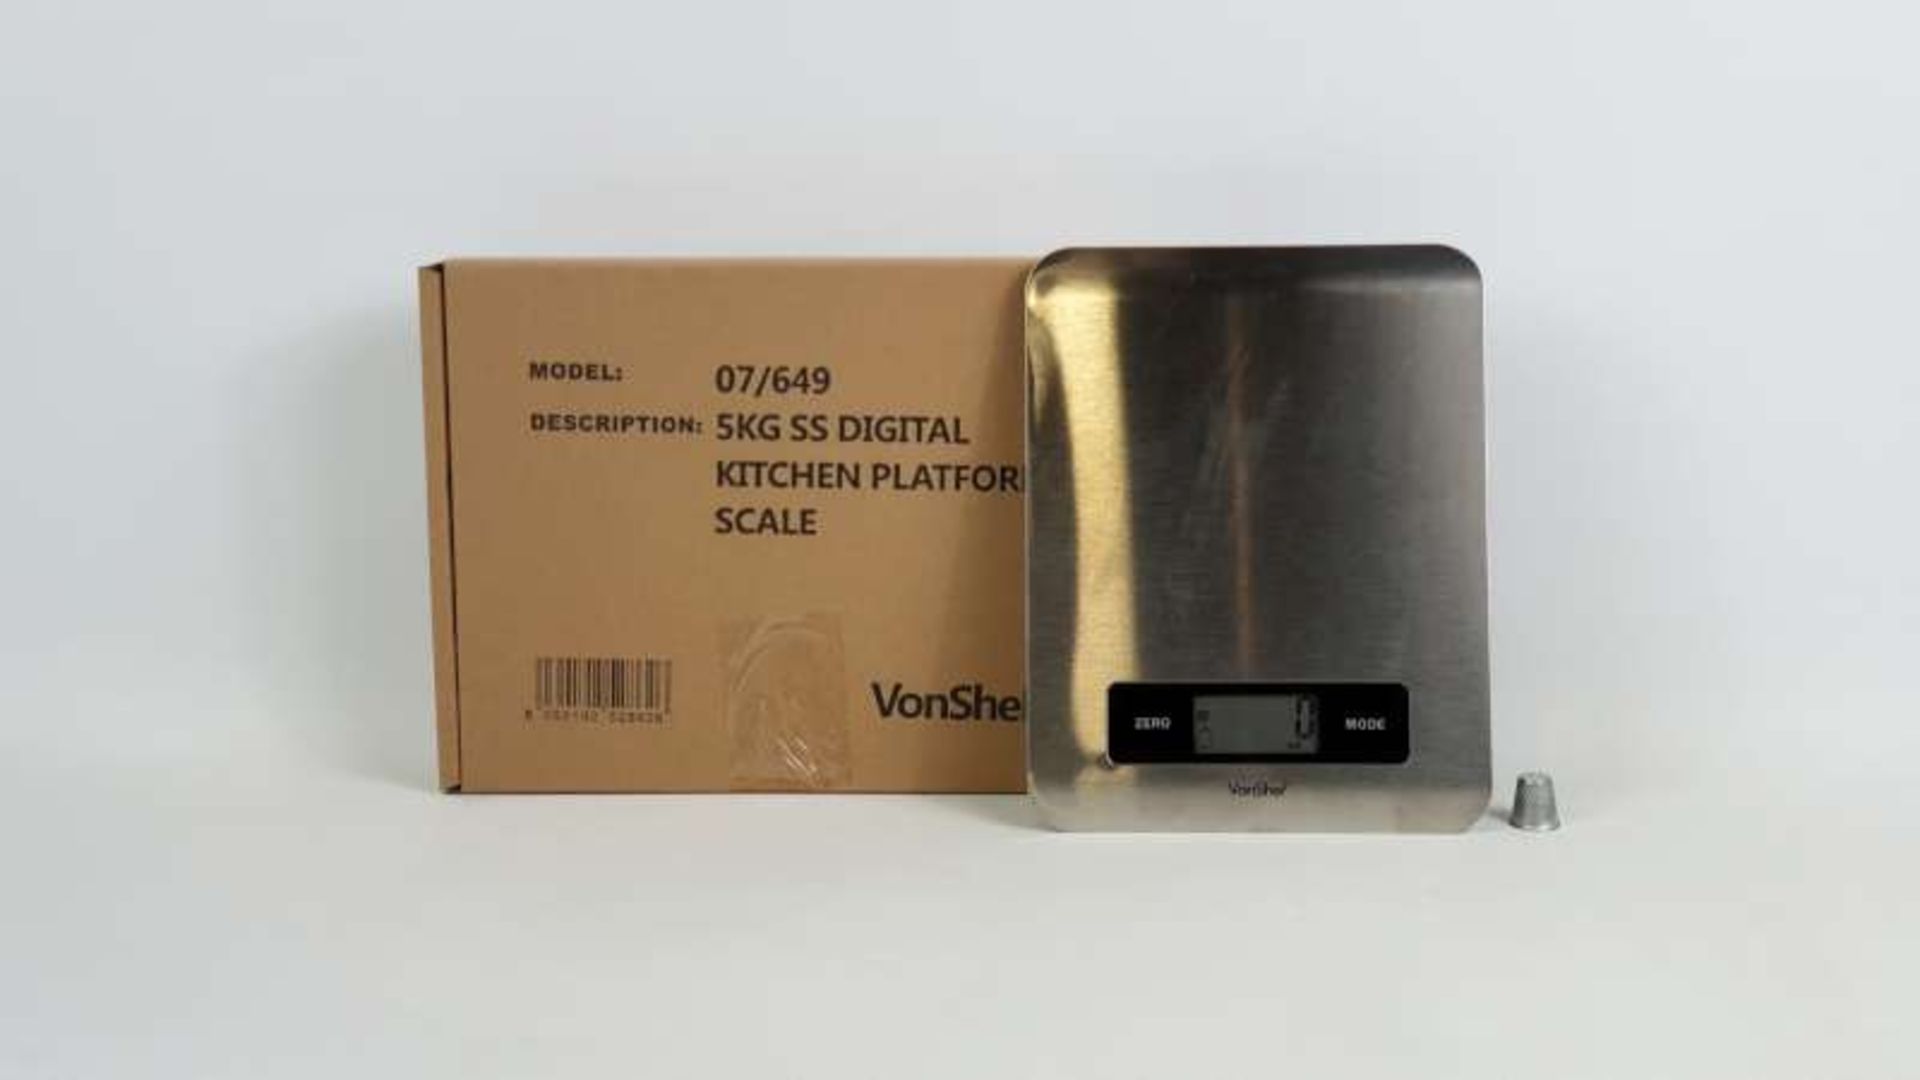 12 X BRAND NEW BOXED VONSHEF 5 KG STAINLESS STEEL DIGITAL KITCHEN PLATFORM SCALES IN 1 BOX